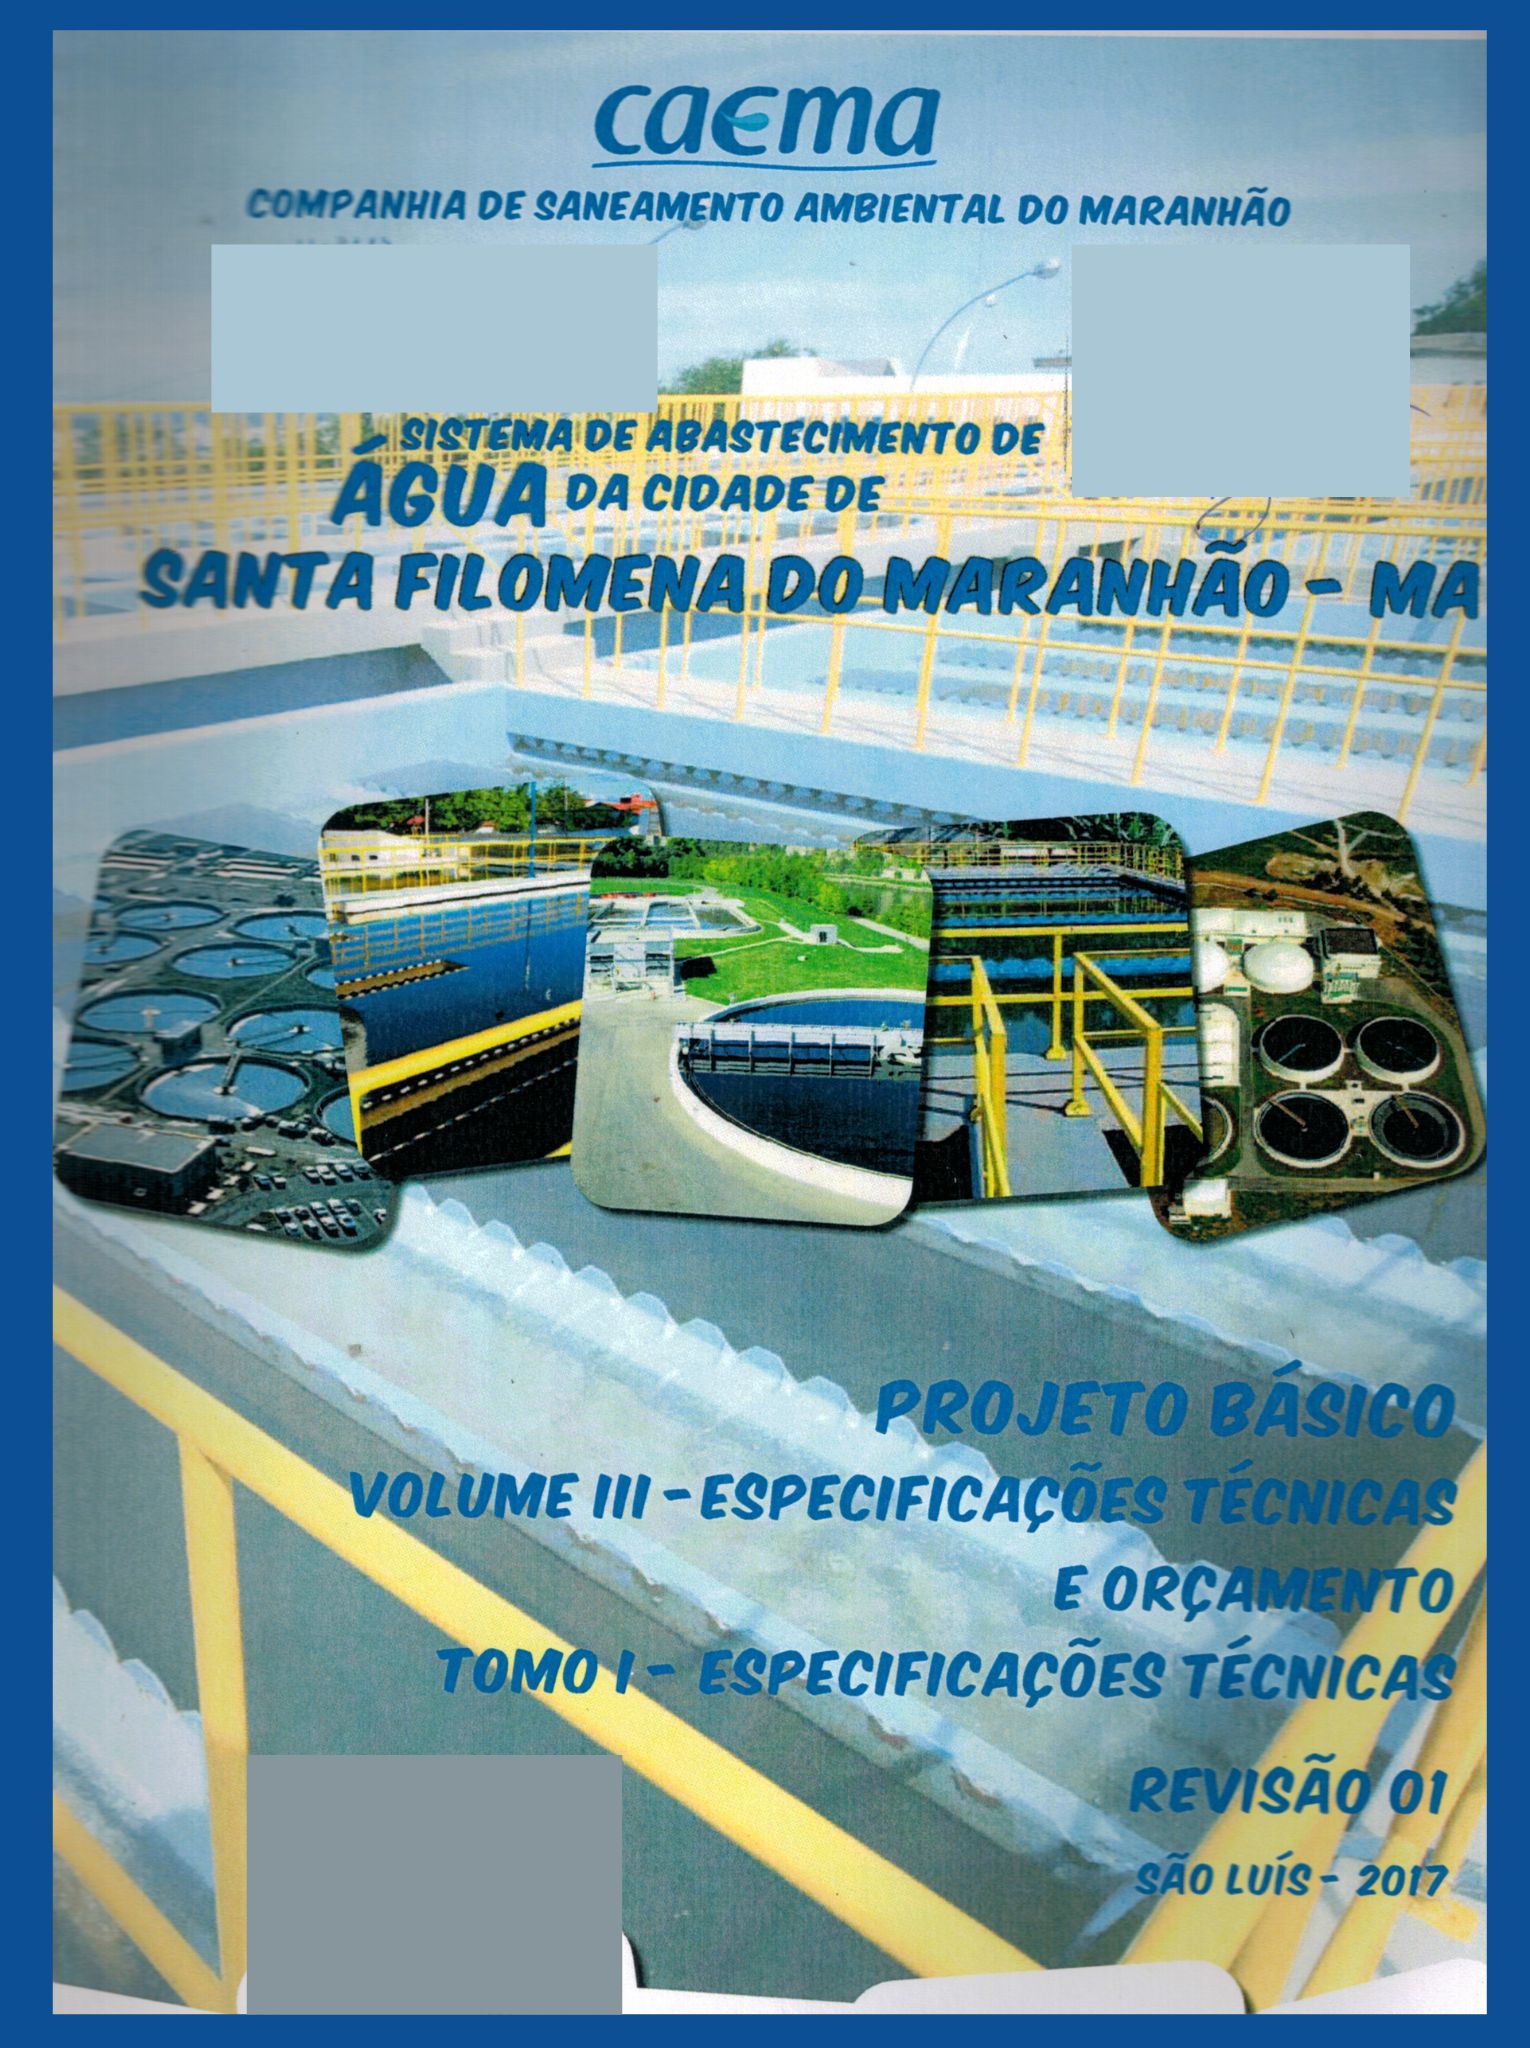 Imagem da capa do Projeto Técnico com informações de titulo e autoria.